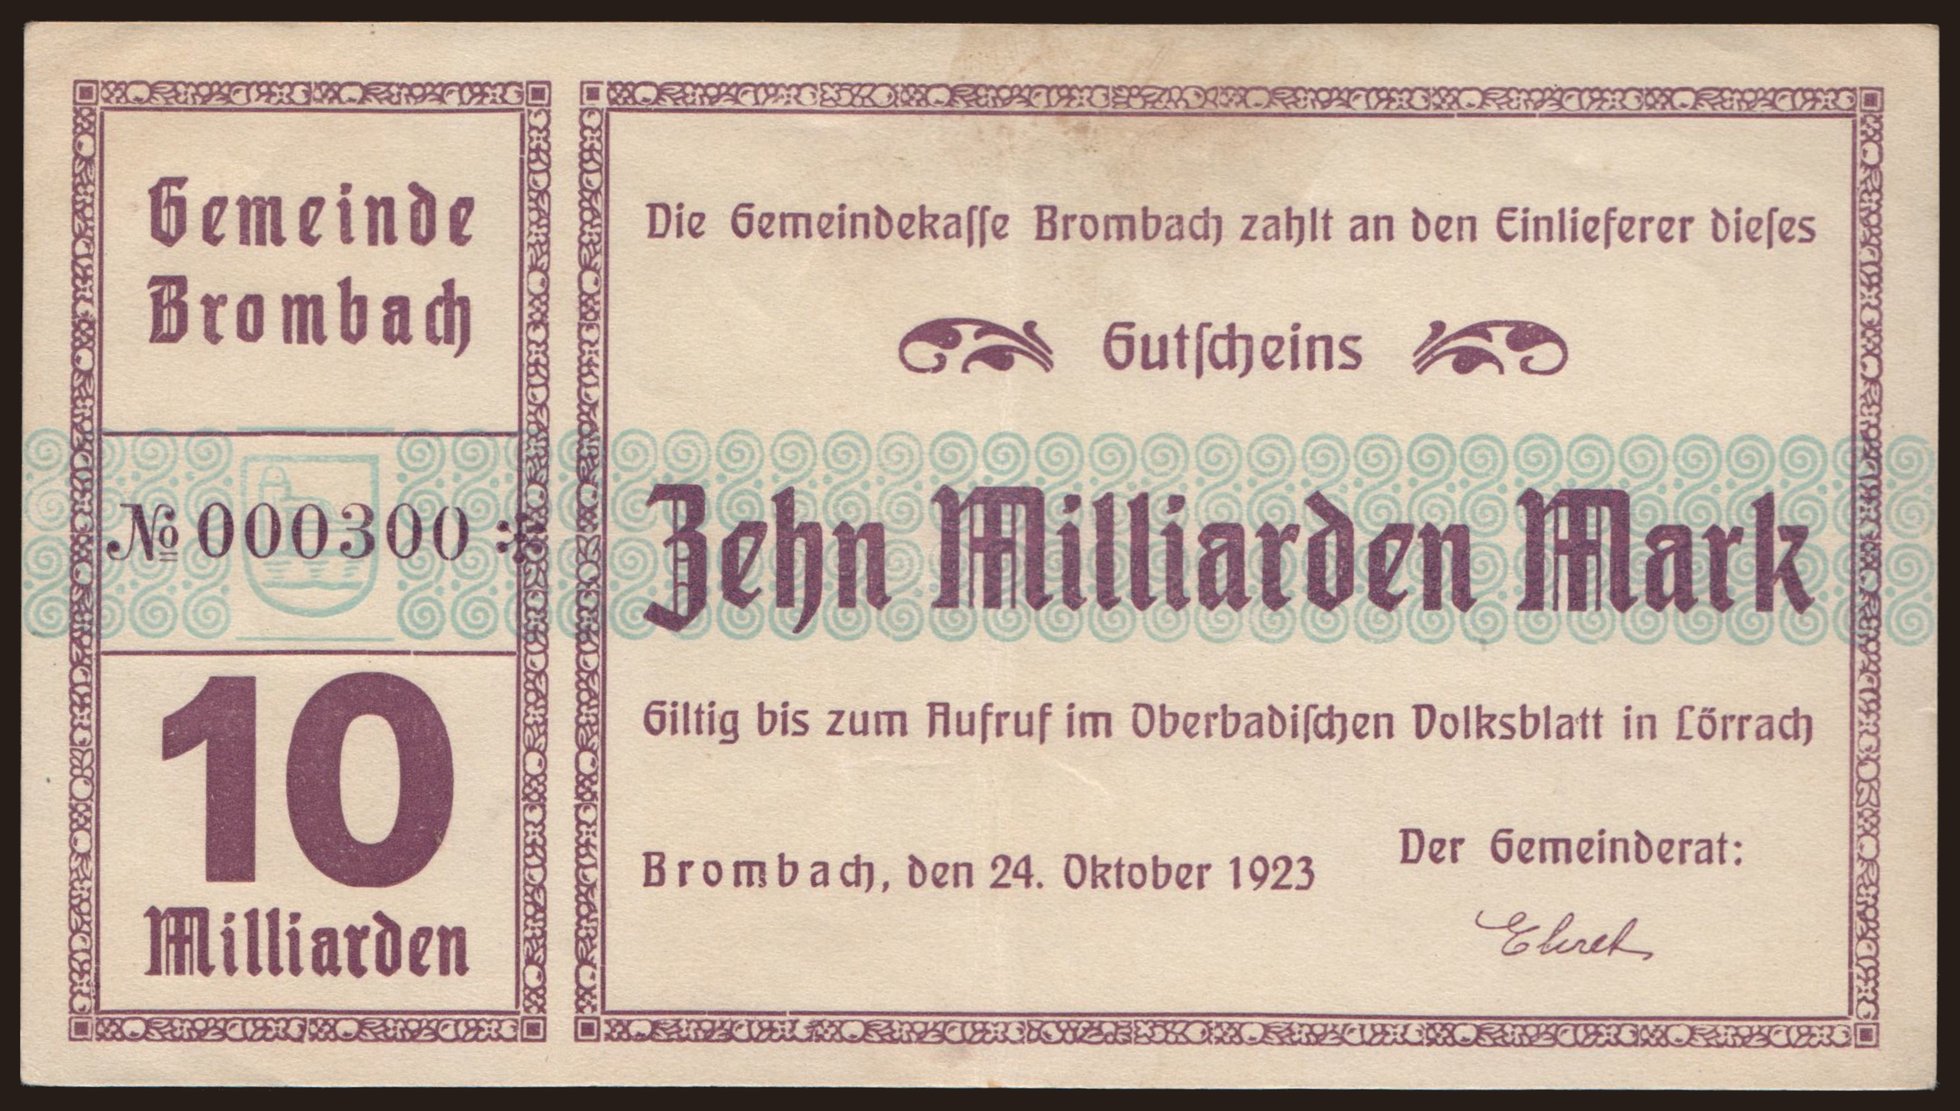 Brombach/ Gemeinde, 10.000.000.000 Mark, 1923